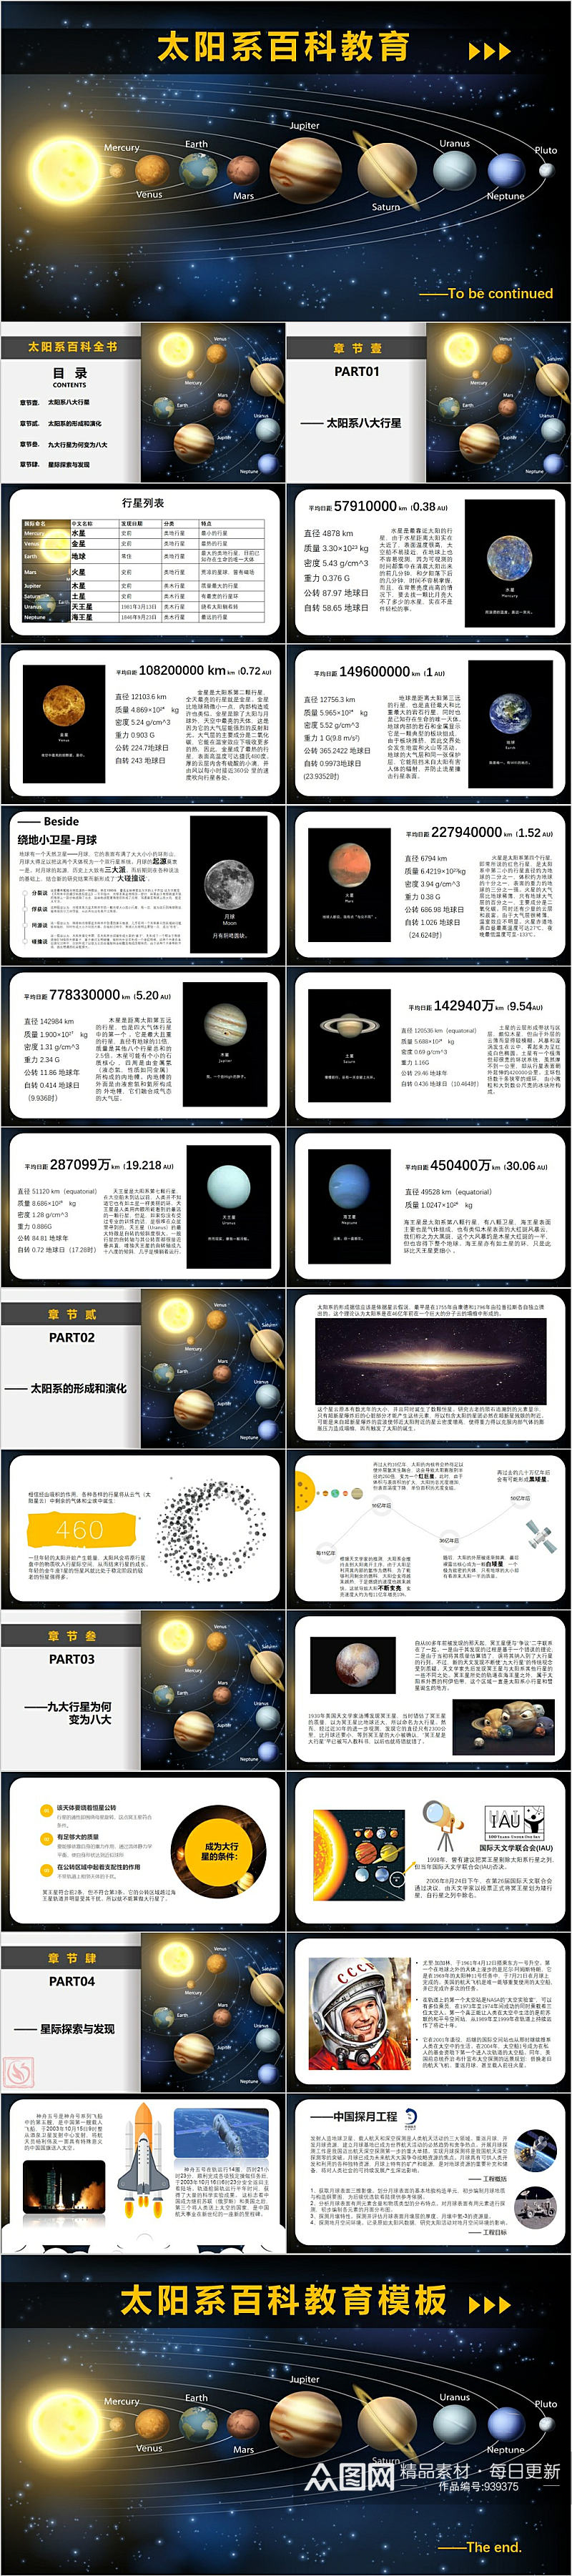 太阳系百科教育PPT模版素材